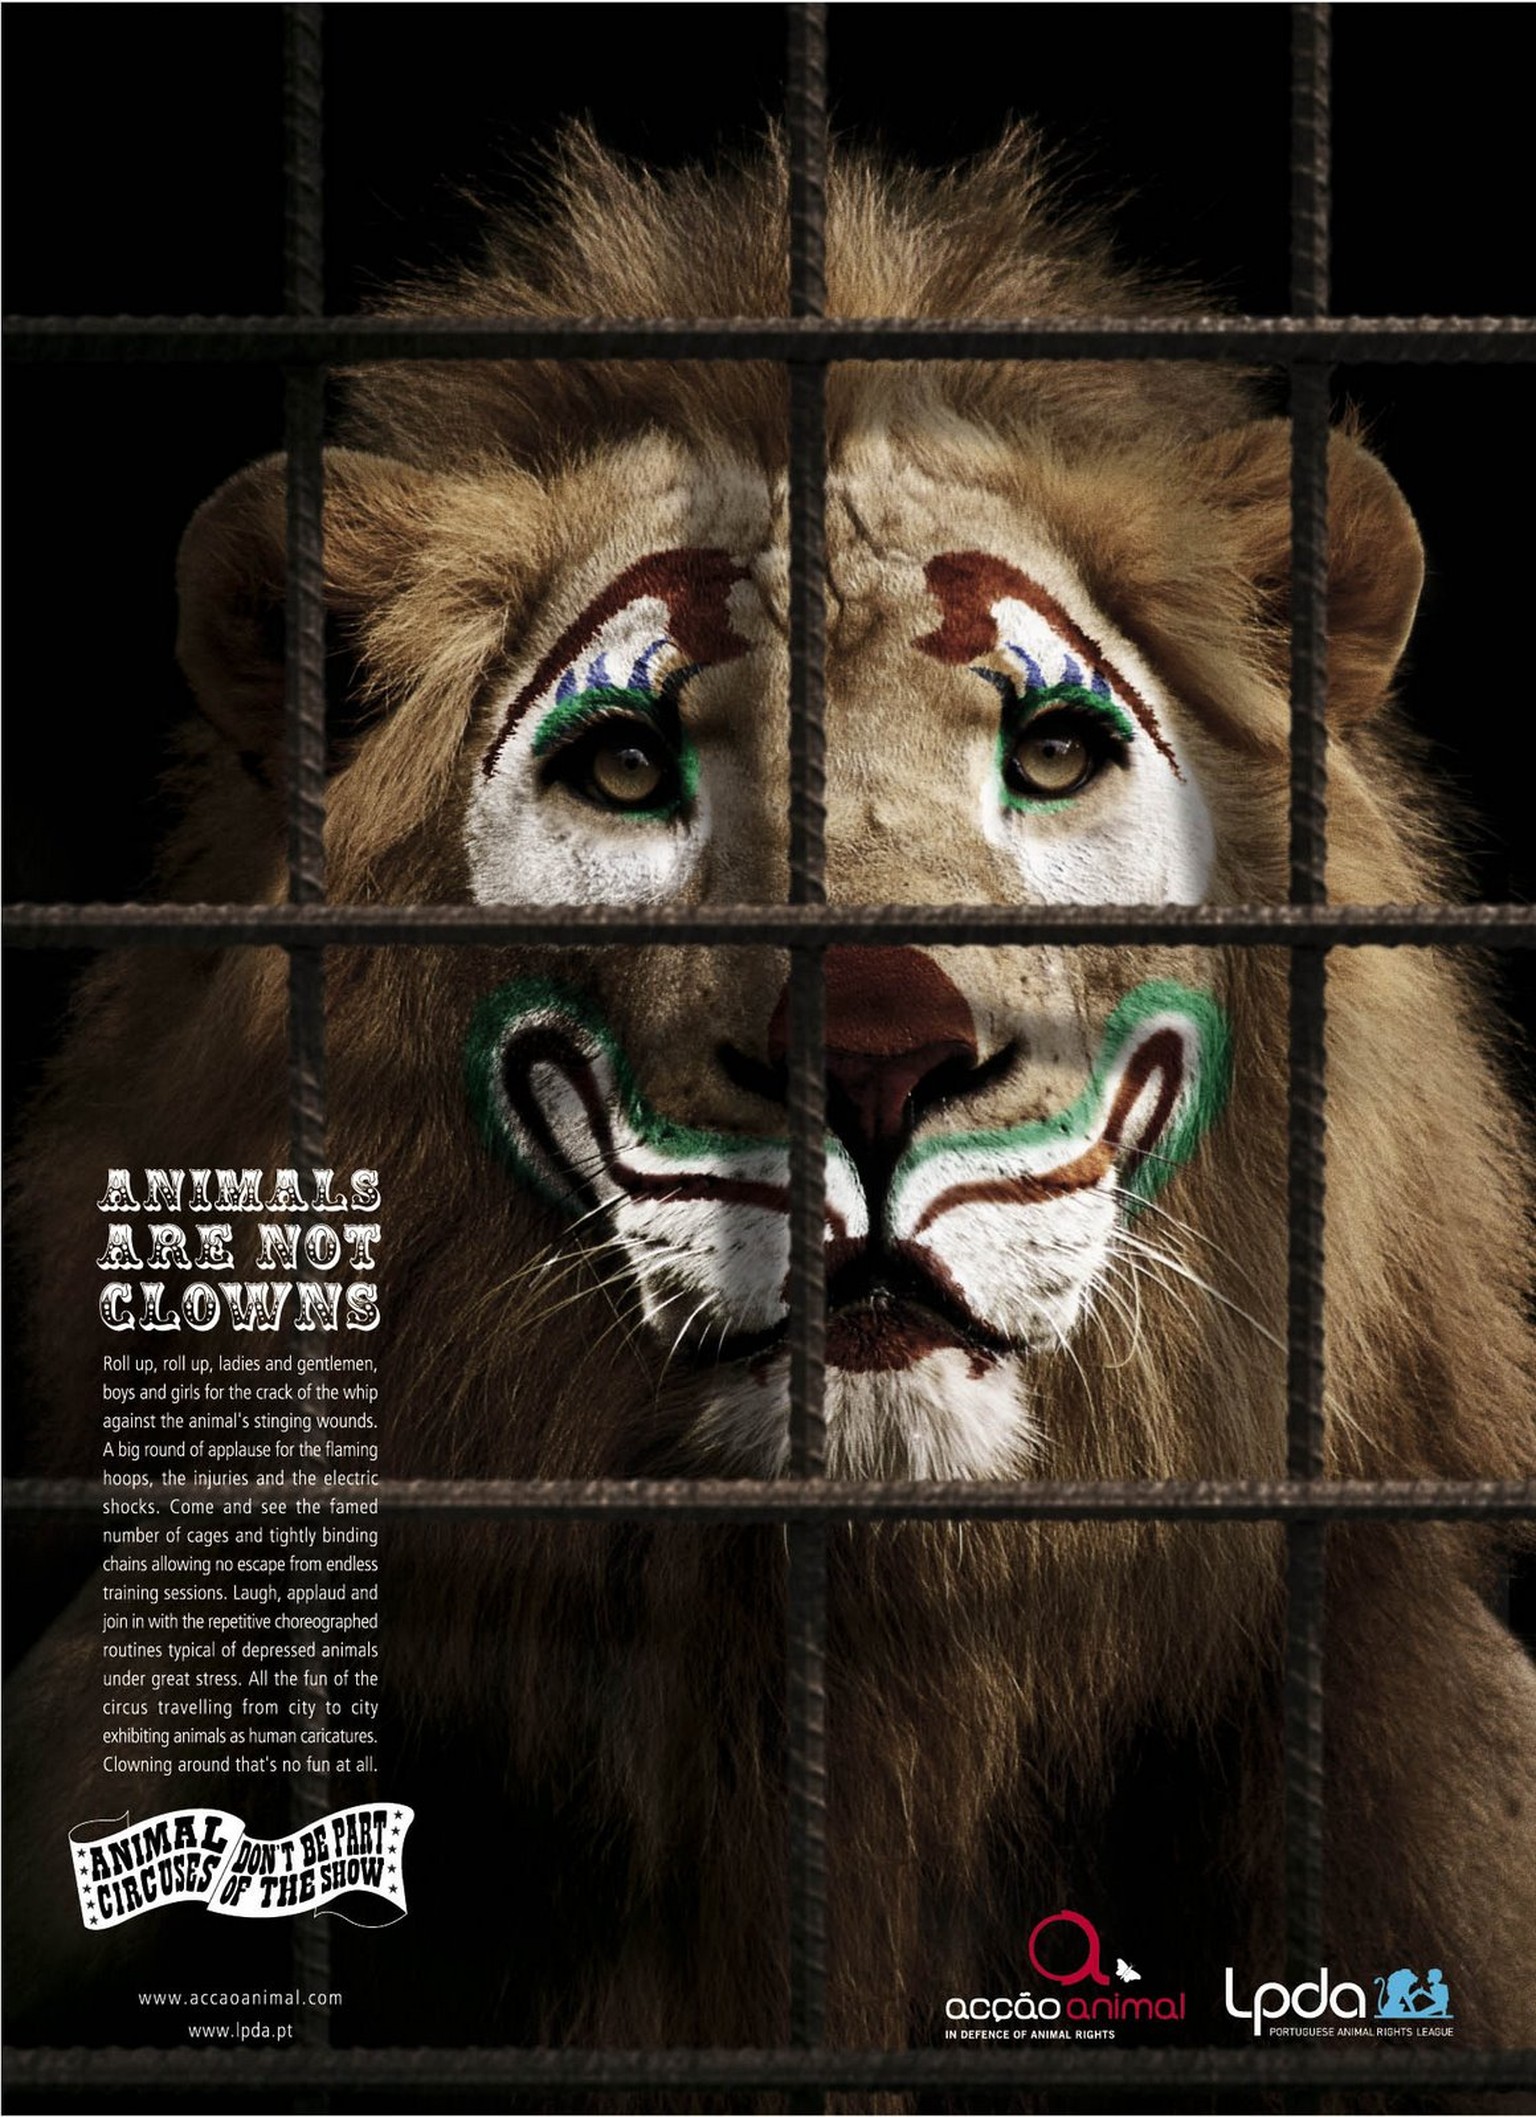 «Animals are not Clowns» ist eine Kampagne der beiden portugiesischen Tierschutzvereine «Liga Portuguesa dos Direitos do Animal» (LDPA) und&nbsp;«Acção Animal». Sie wollen auf die schlechten Lebensbed ...